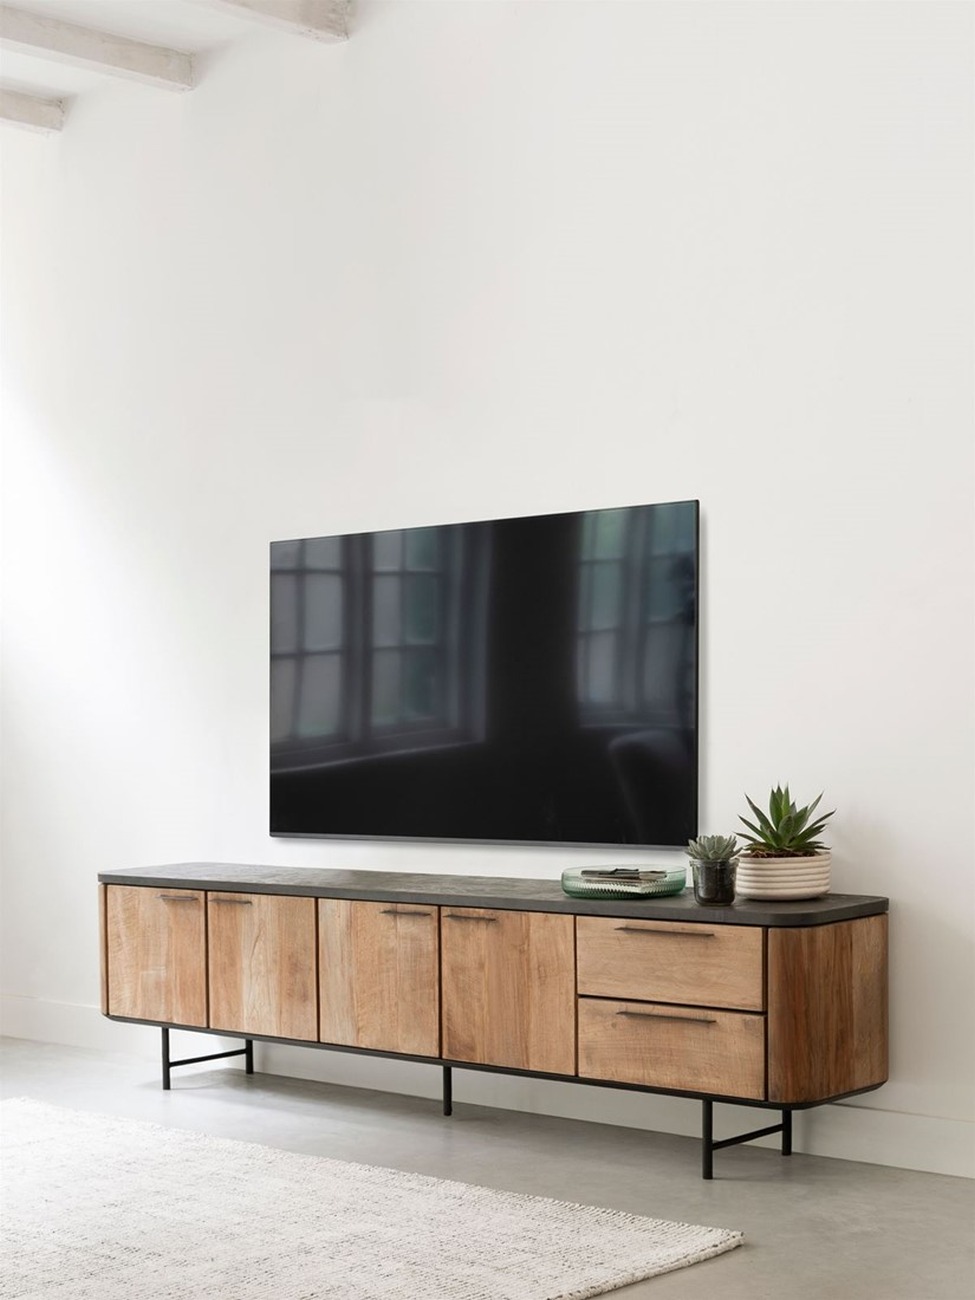 Das TV Board Soho überzeugt mit seinem modernen Design. Gefertigt wurde es aus recyceltem Teakholz, welches einen natürlichen Farbton besitzt. Das Gestell ist aus Metall und hat eine schwarze Farbe. Das TV Board besitzt eine Breite von 230 cm.